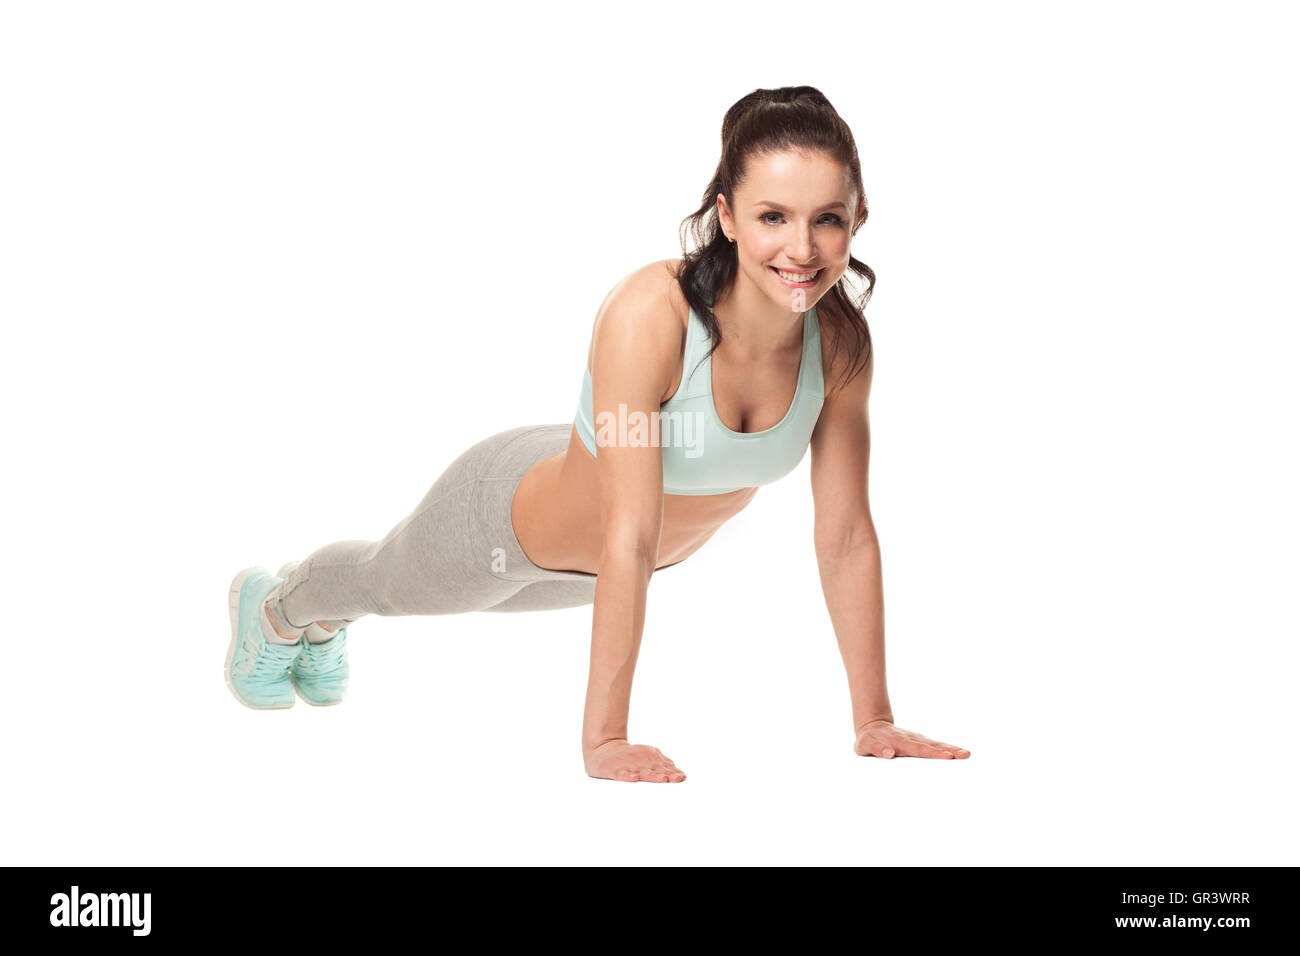 sportliche Frau Liegestütze auf einem weißen Hintergrund zu tun. Fitness-Modell mit einem schönen, sportlichen Körper Stockfoto